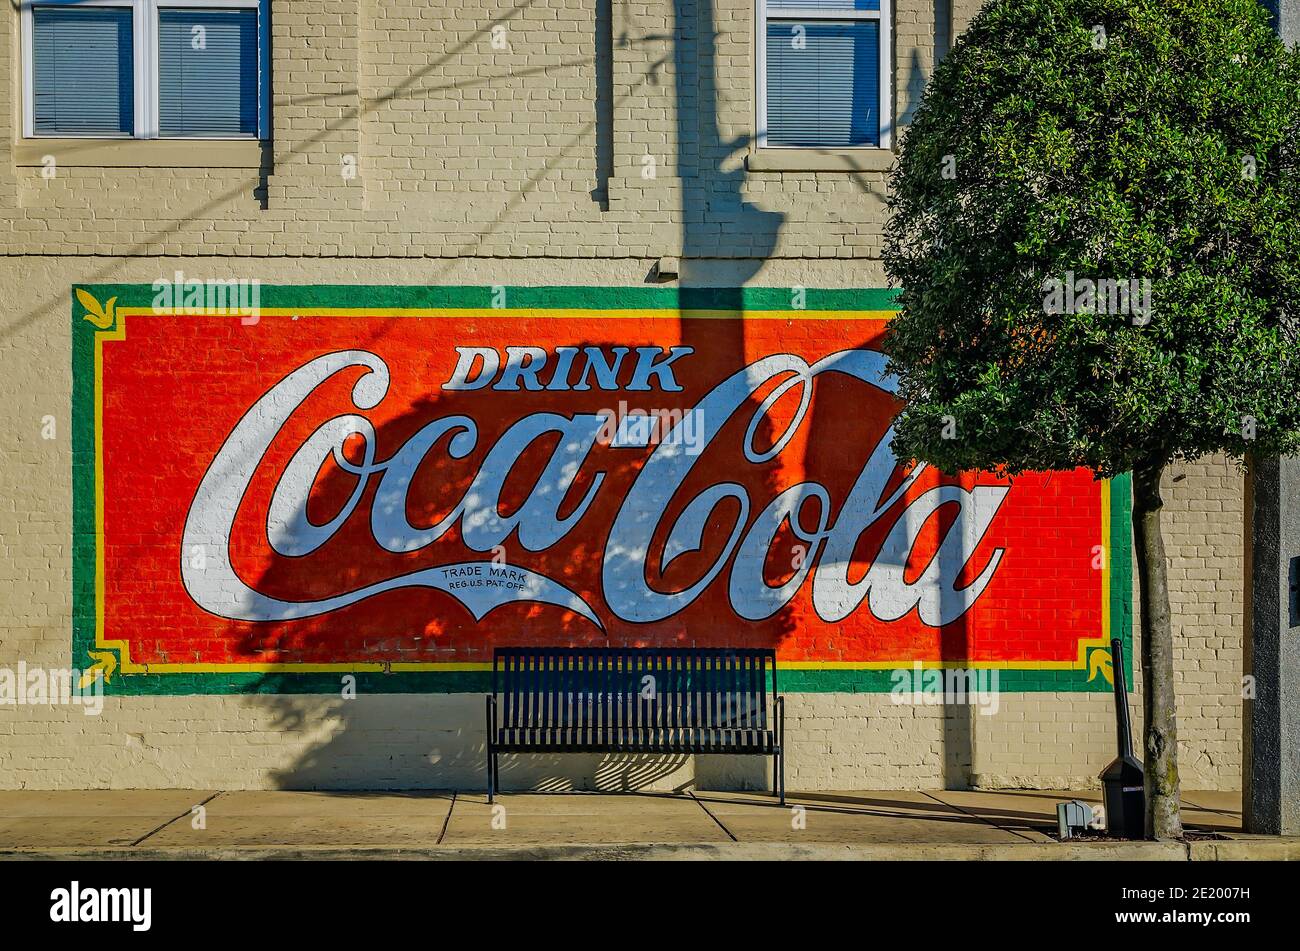 Ein Coca-Cola Wandbild schmückt die Wand eines Unternehmens, wenn die Sonne in der Innenstadt von Korinth, Mississippi untergeht. Corinth Coca-Cola Bottleworks wurde 1907 gegründet. Stockfoto